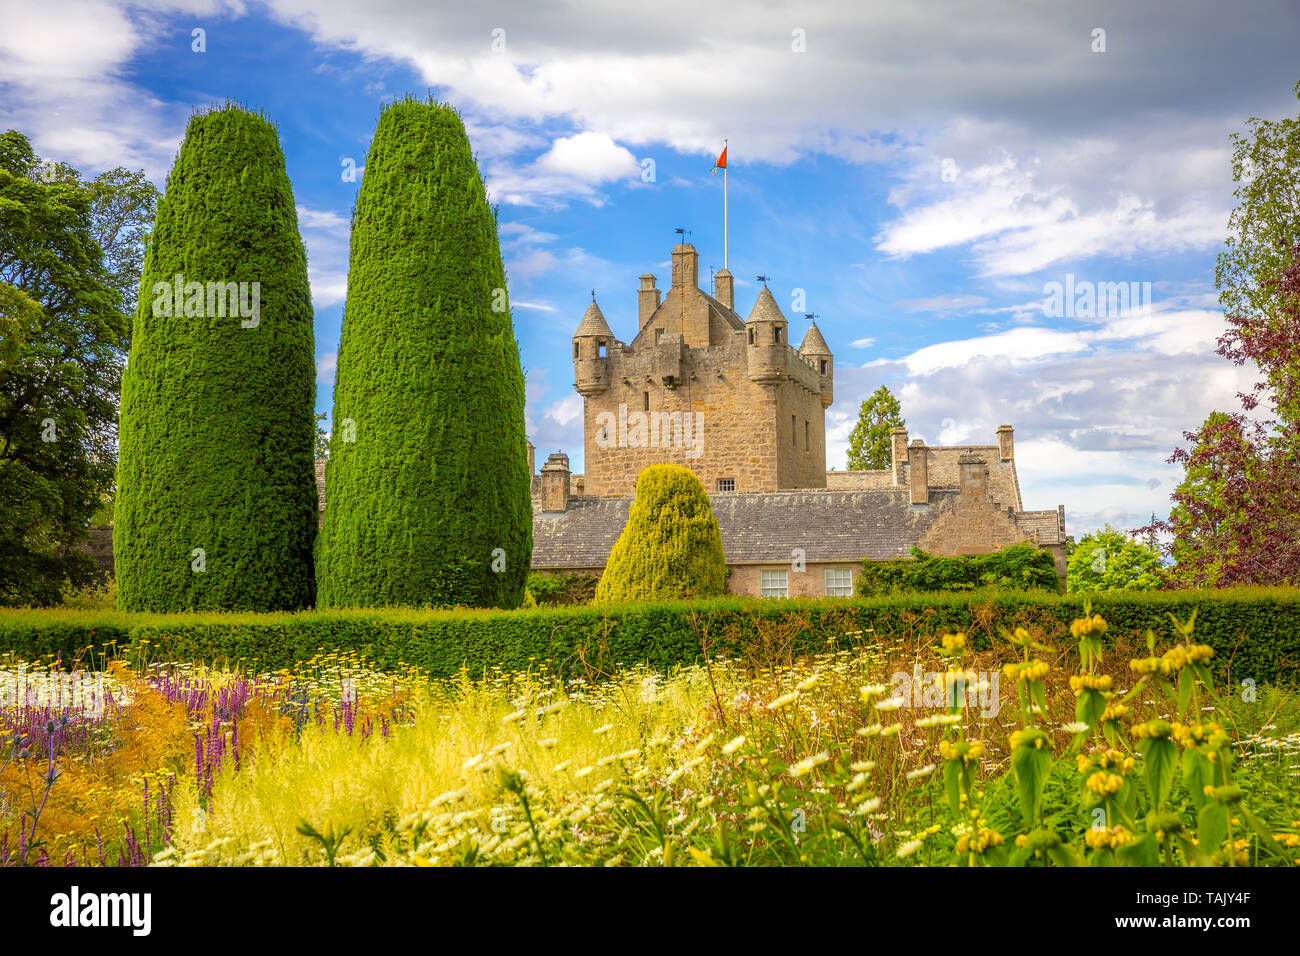 Le Château de Cawdor romantique avec jardins en Ecosse Banque D'Images